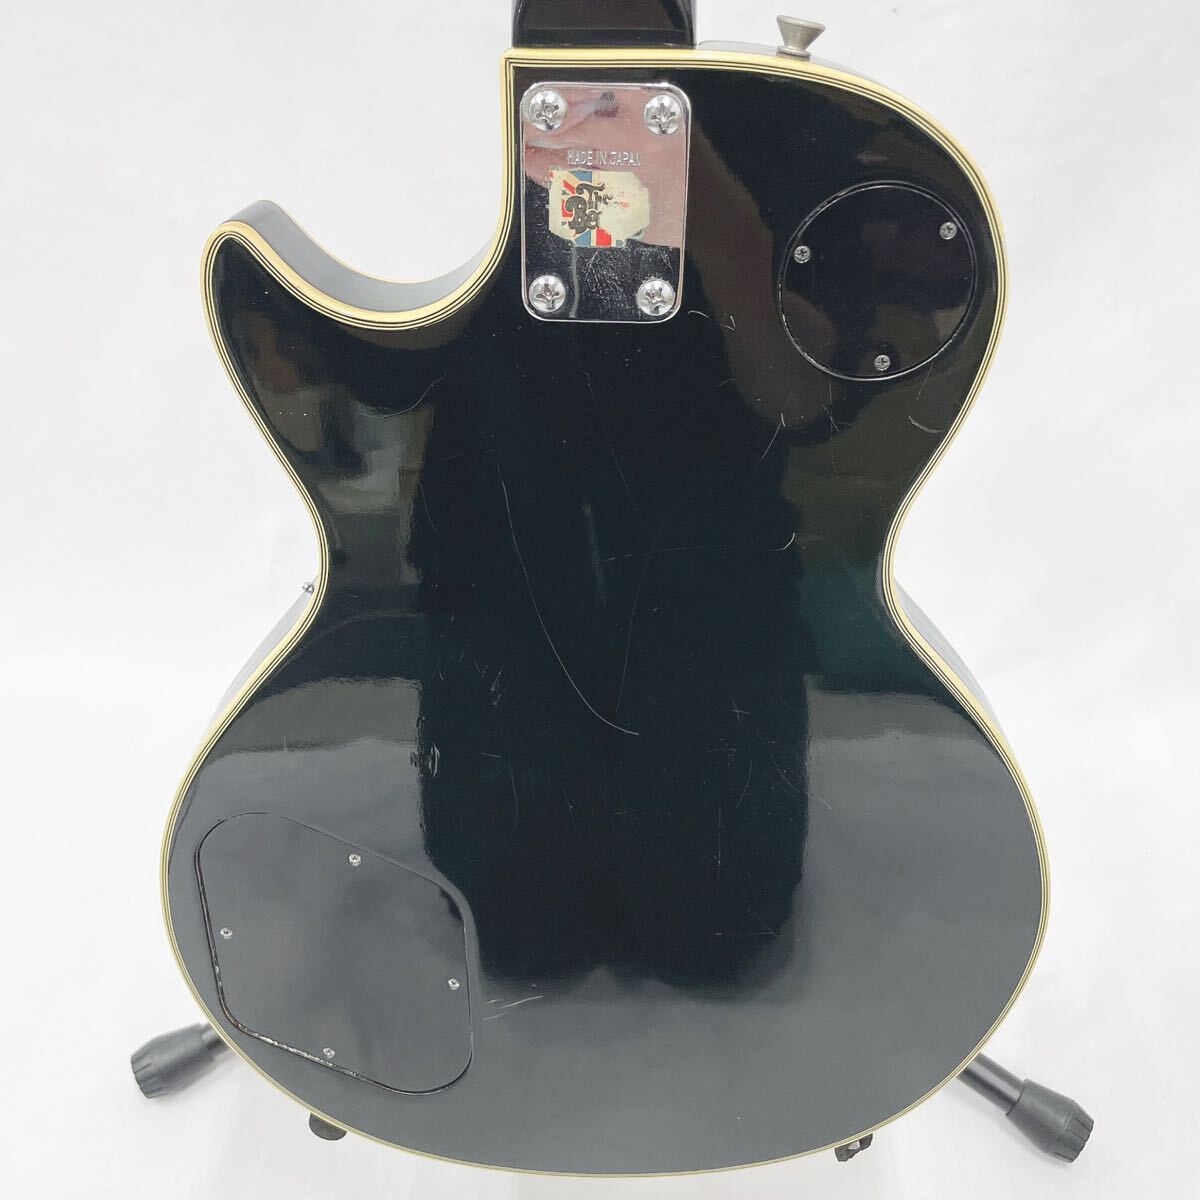 エレキギター メーカー不明 全長100cm 付属品 ハードケース付き 弦楽器の画像6